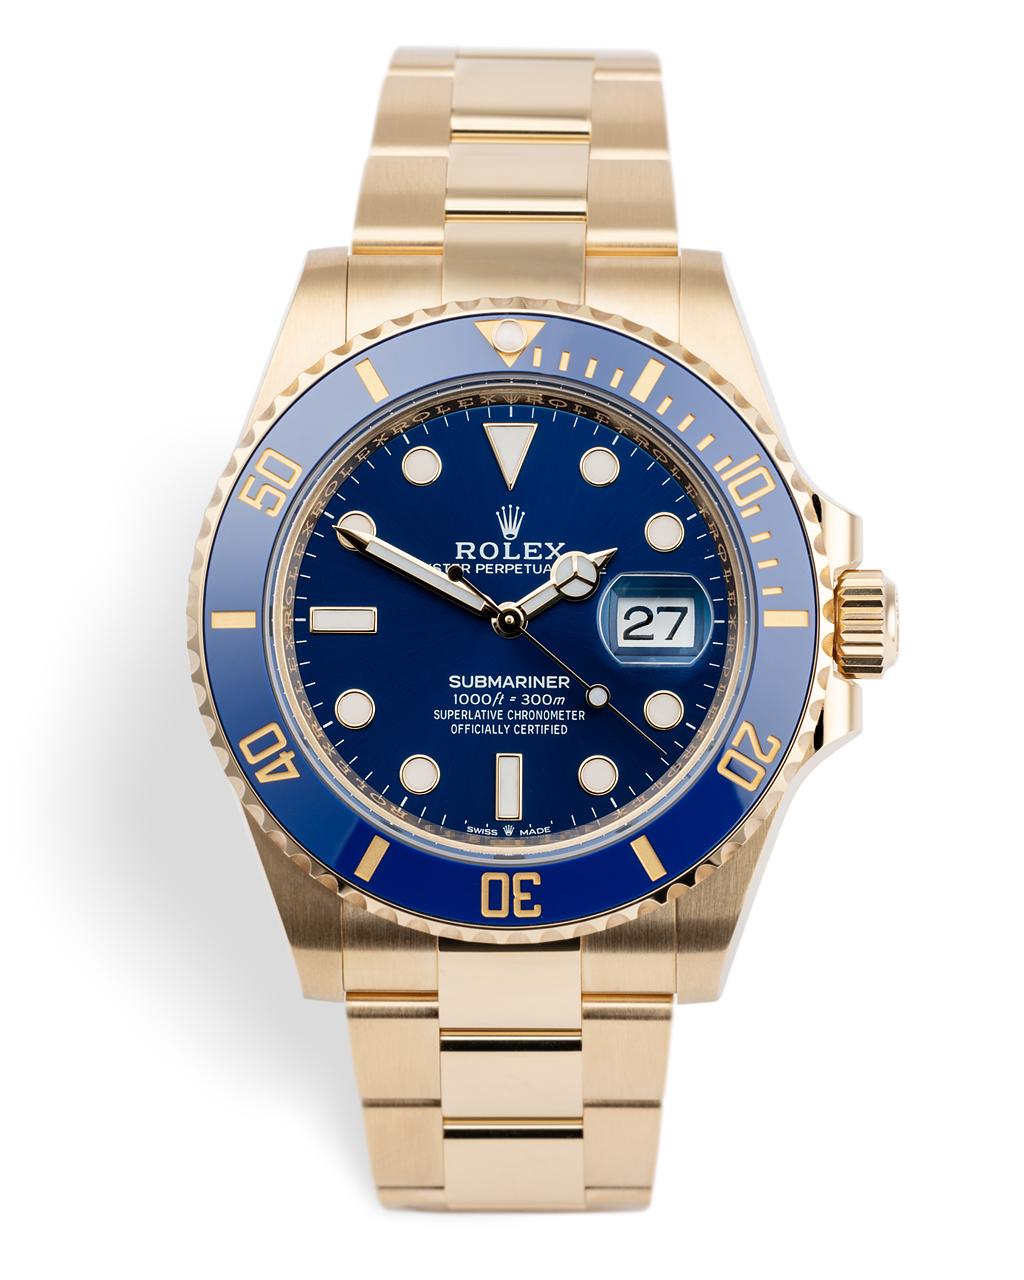 Rolex Submariner Date Watches | ref 126618LB | Rolex Warranty to 2026 ...